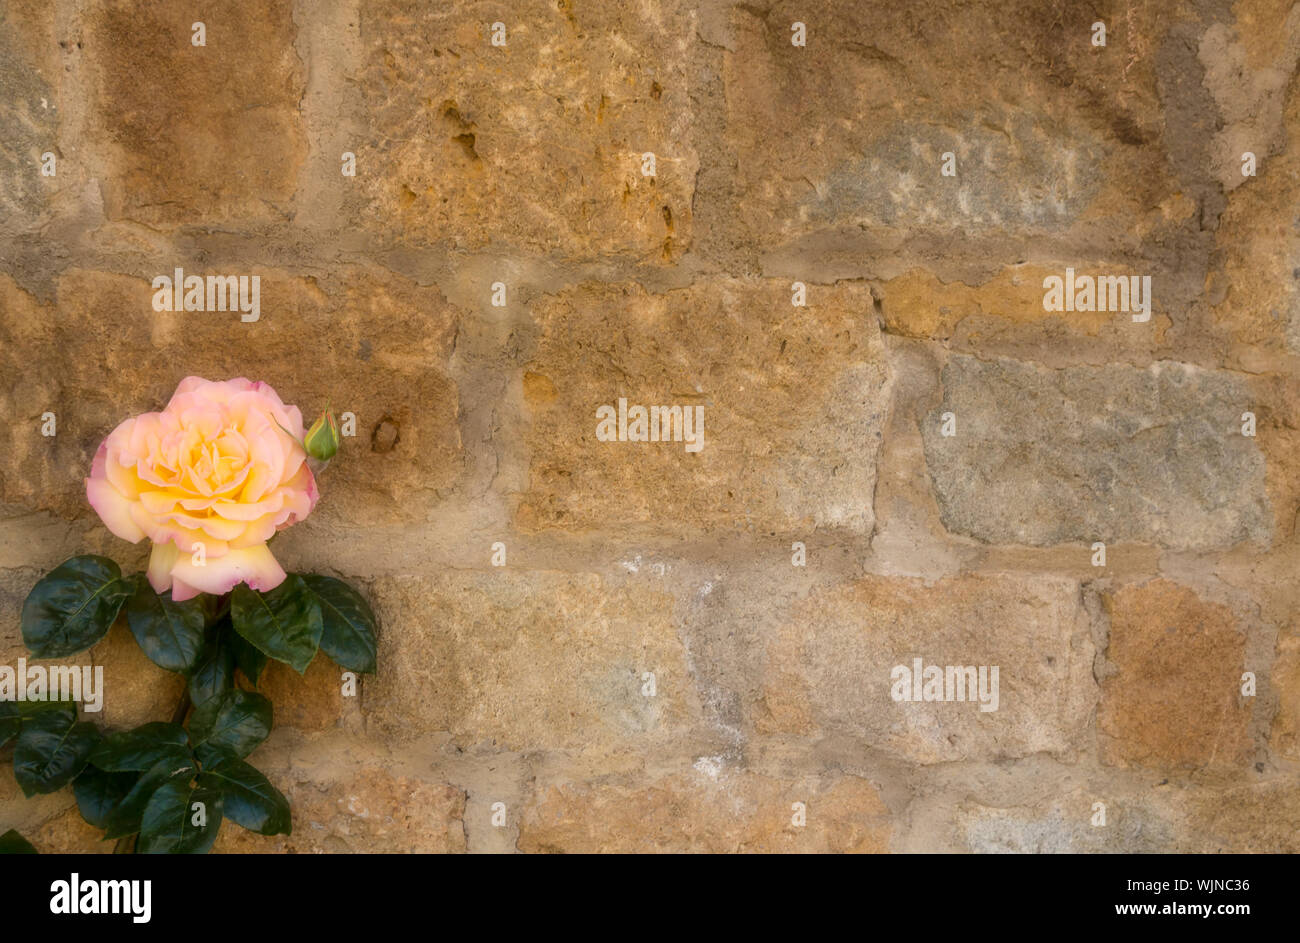 Une rose jaune rosâtre de grimper un mur de pierre. Copie de l'espace disponible. Wallpaper/background Banque D'Images